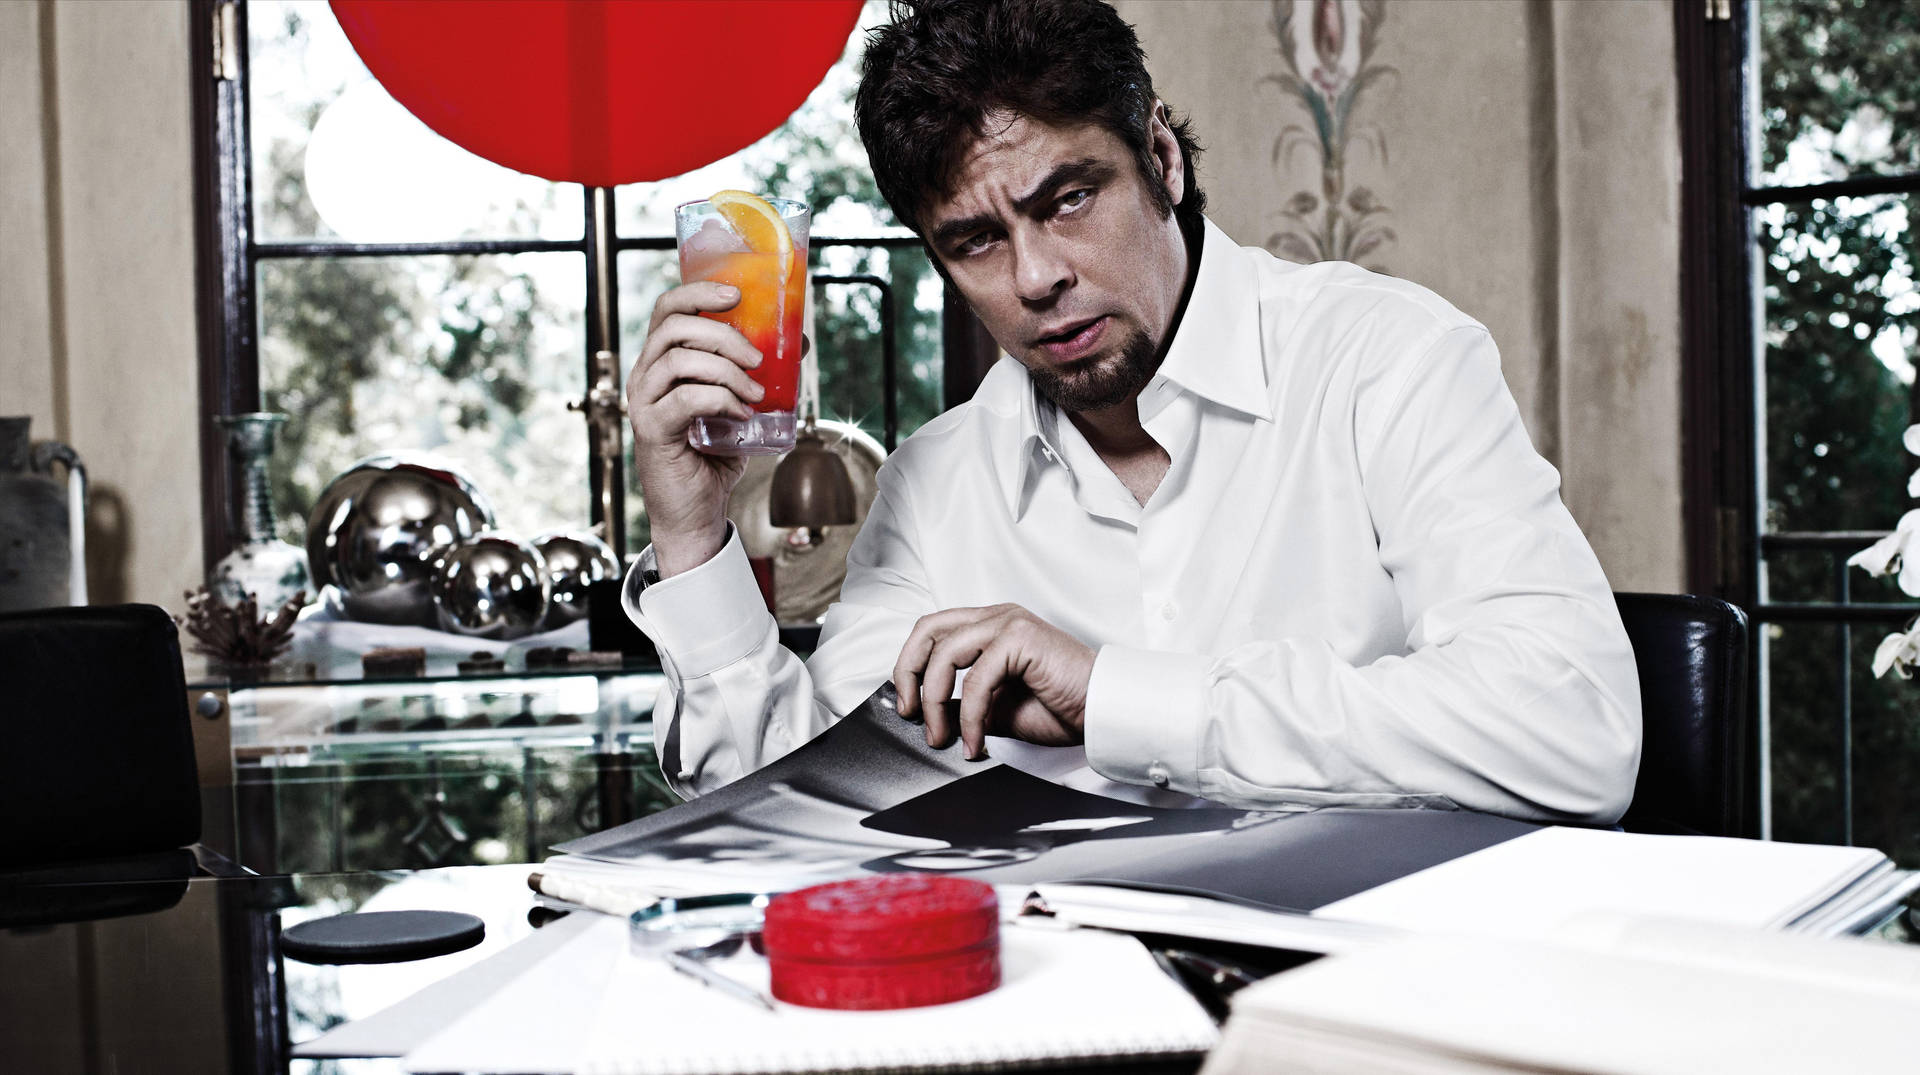 Benicio Del Toro In February 2011 Campari Calendar Picture